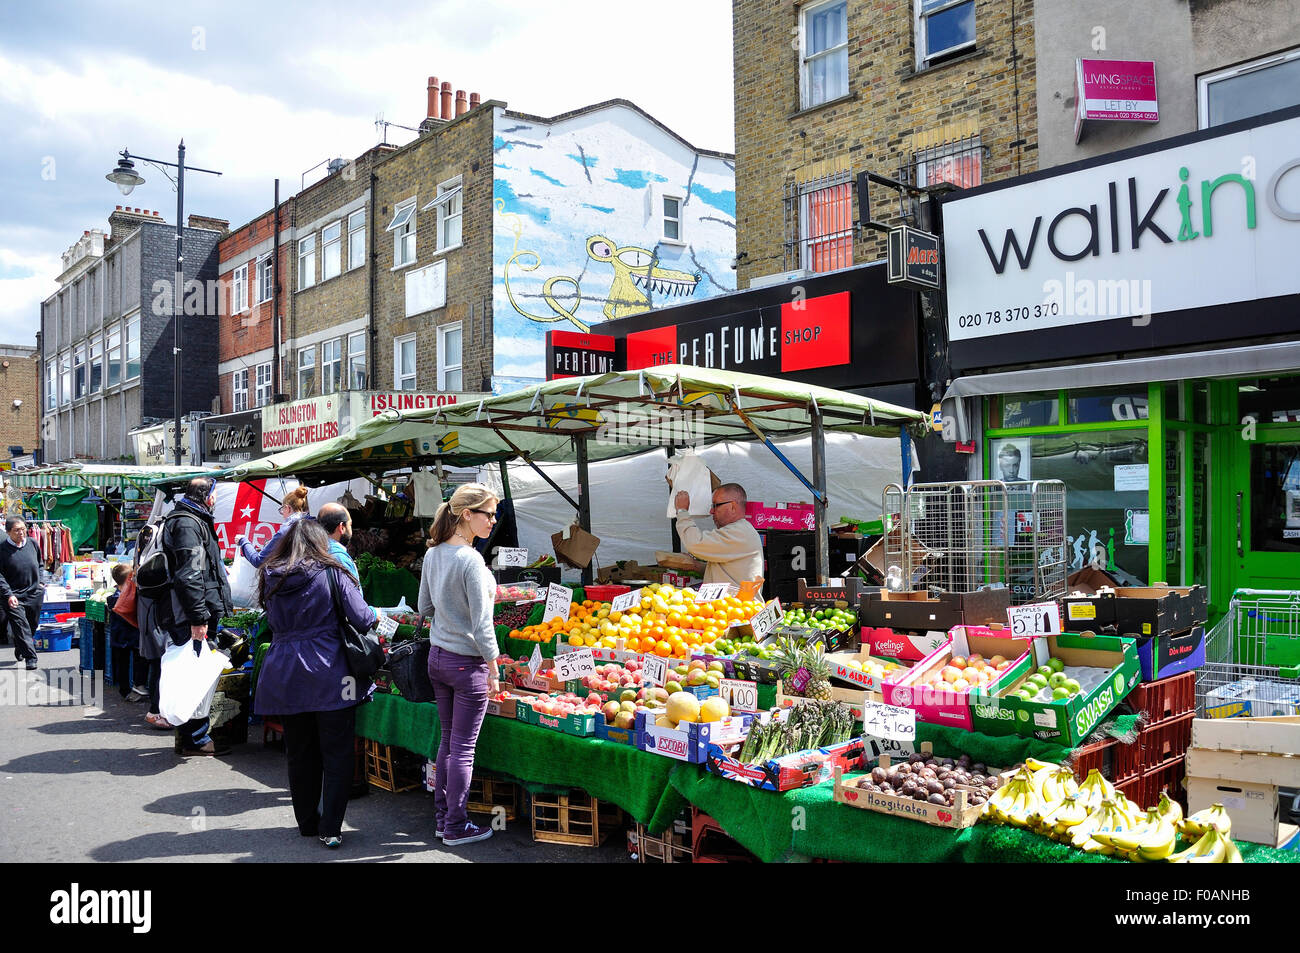 La frutta e la verdura, stallo mercato Cappella, Islington, London Borough di Islington, London, England, Regno Unito Foto Stock